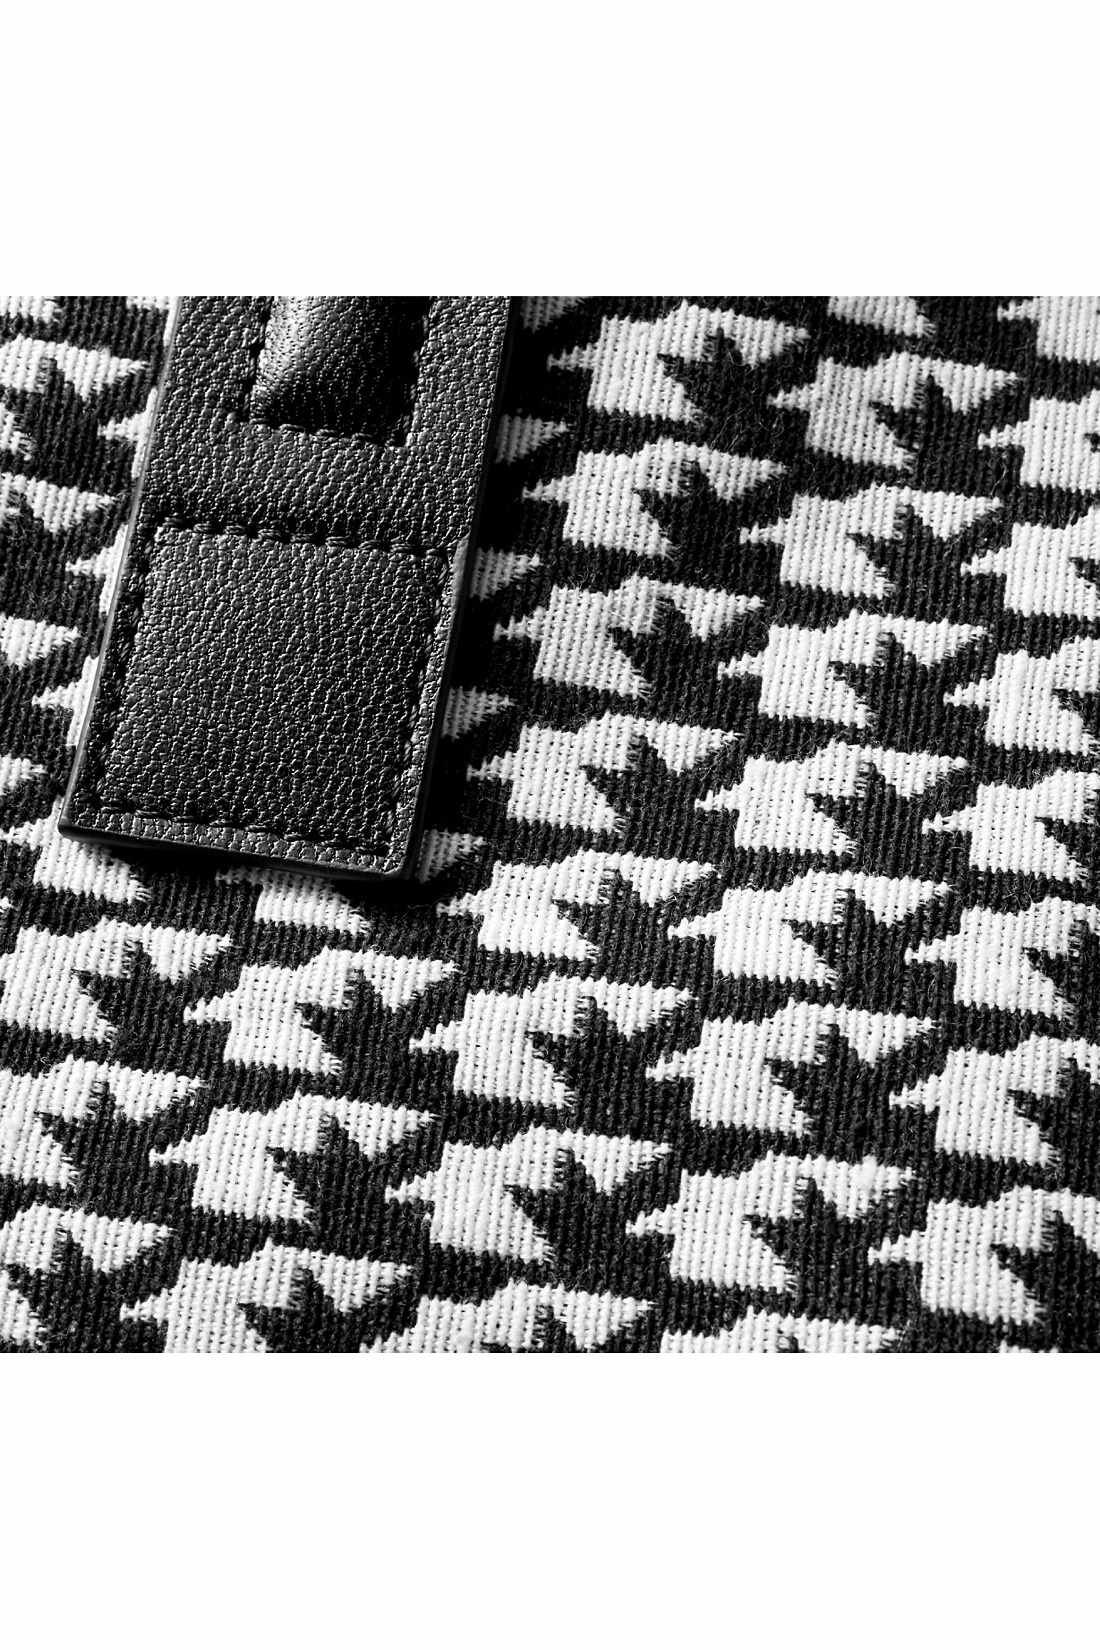 IEDIT|IEDIT＋[イディットプラス]　コーディネートのアクセント　モノトーン織り柄の本革遣いトートバッグ〈ブラック〉|ちどり風の織り生地に、黒の本革遣いがリッチな表情。